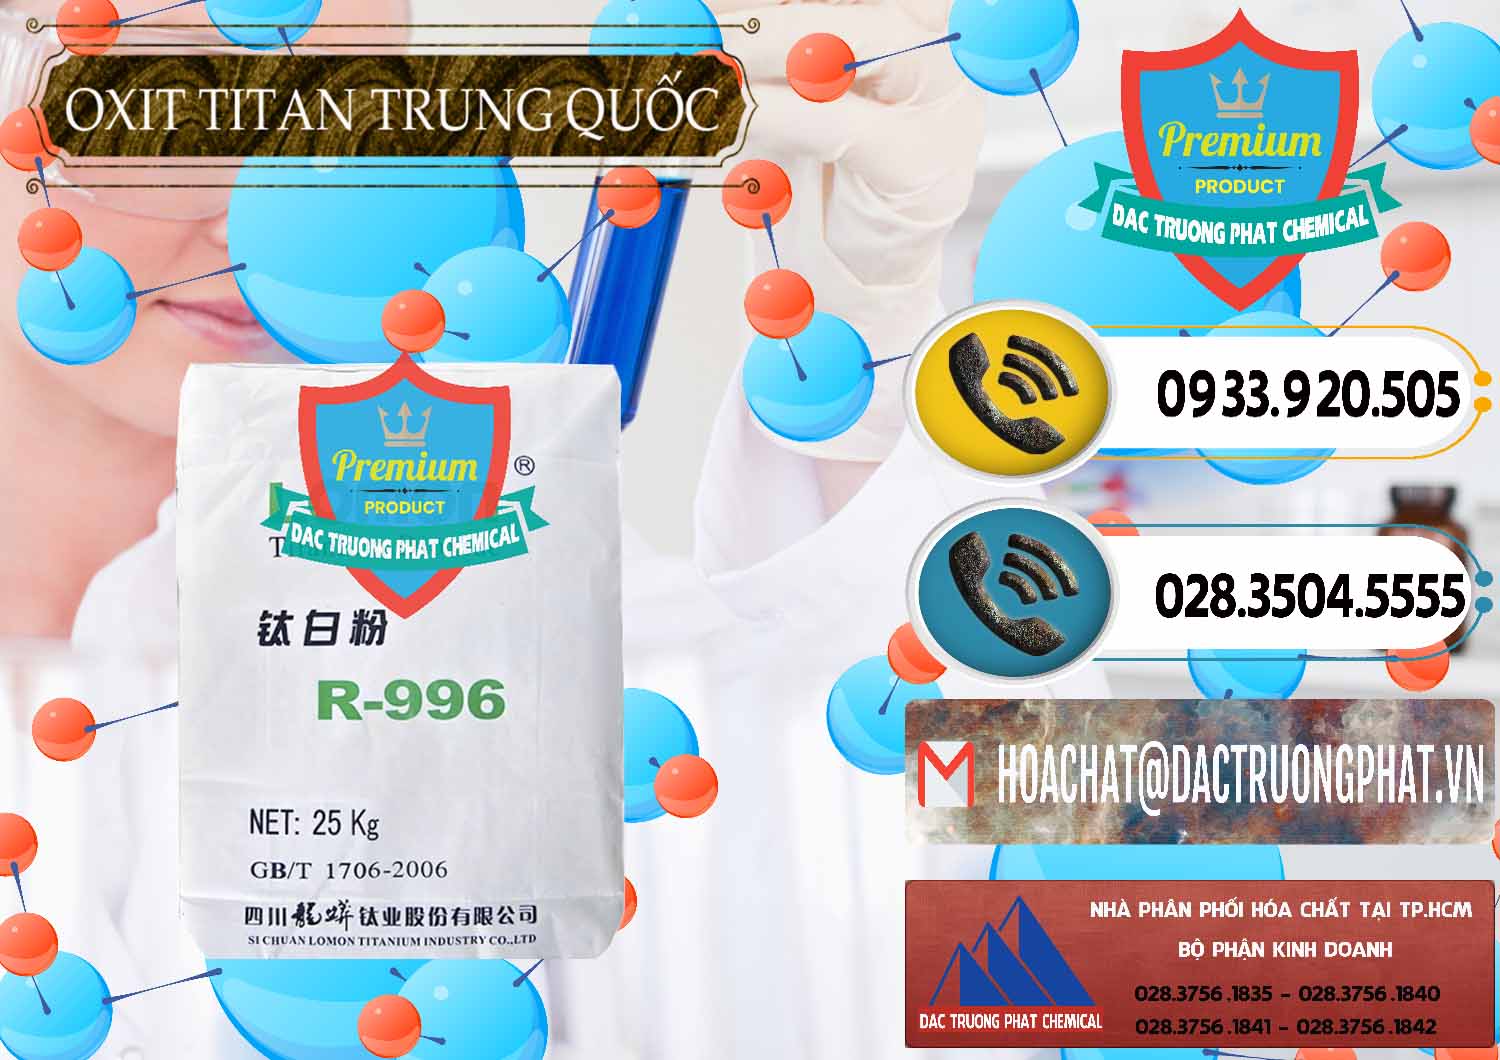 Cty chuyên bán - cung ứng Oxit Titan KA100 – Tio2 Trung Quốc China - 0398 - Nơi cung cấp ( bán ) hóa chất tại TP.HCM - hoachatdetnhuom.vn